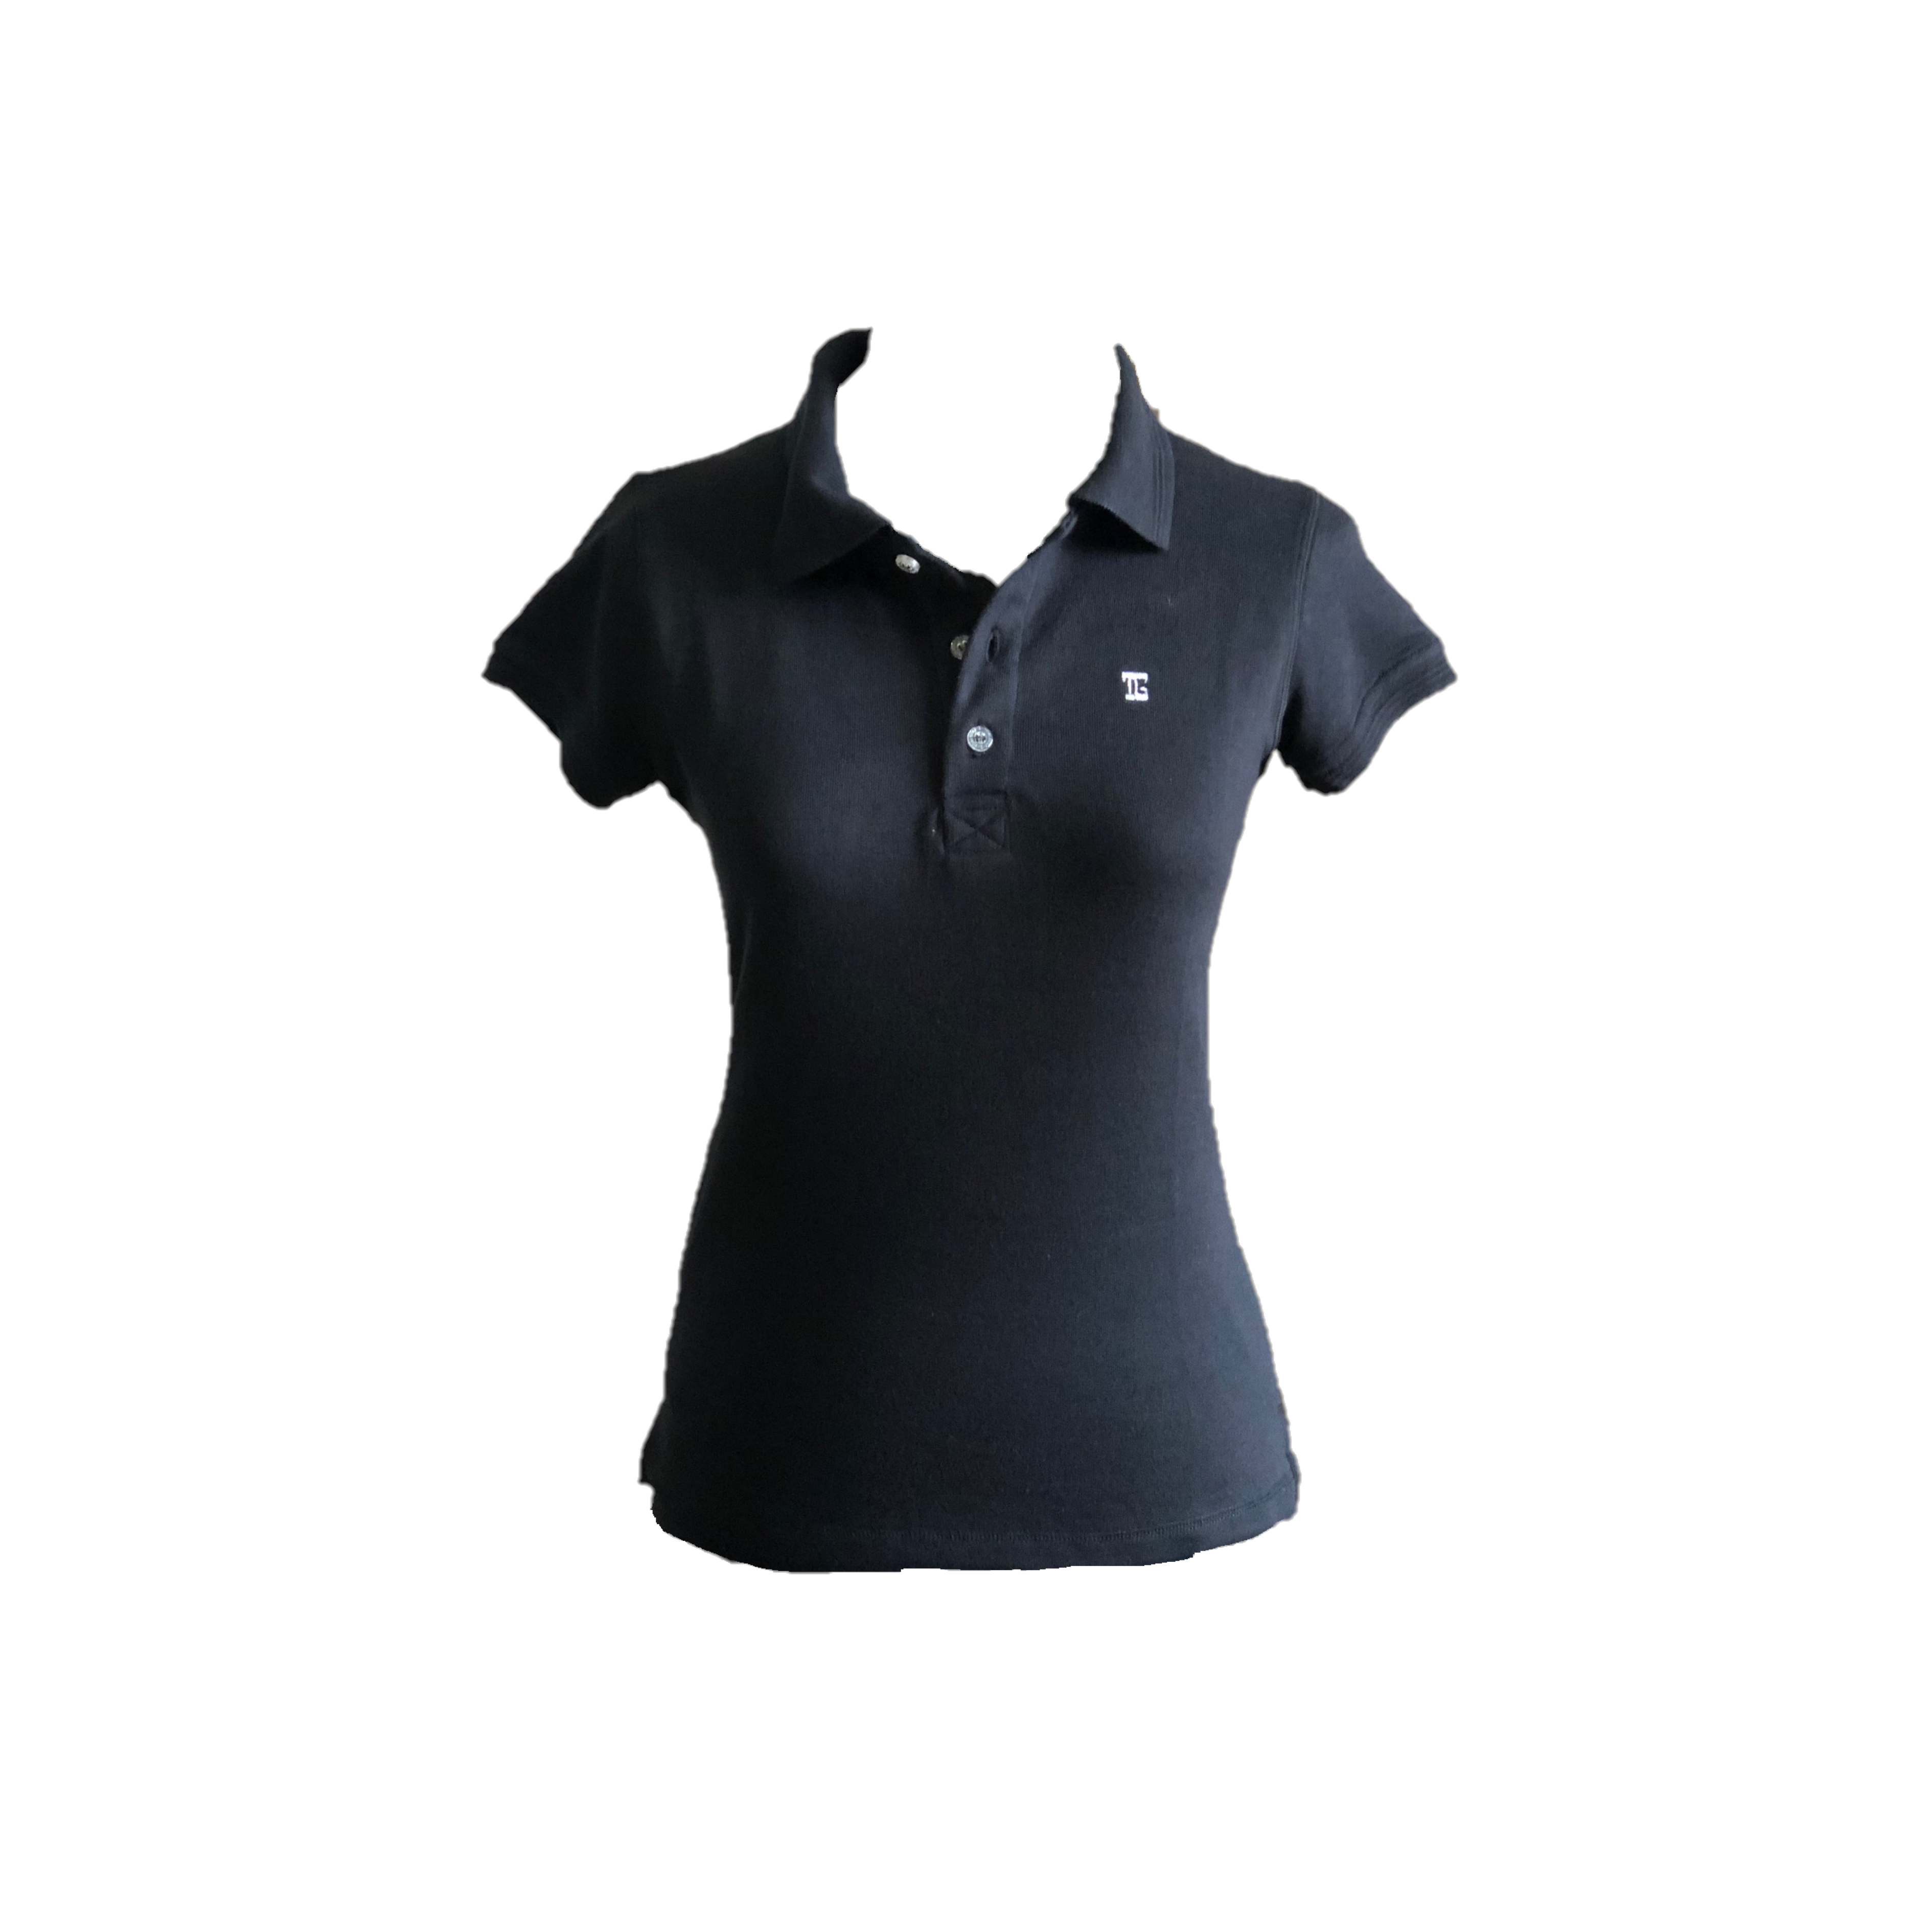 LT-105A || Ladies Top Black Short Sleeve  Textured Cloth One Concealed Side Seam Pocket Featured Overlocked Shoulder V Saddle